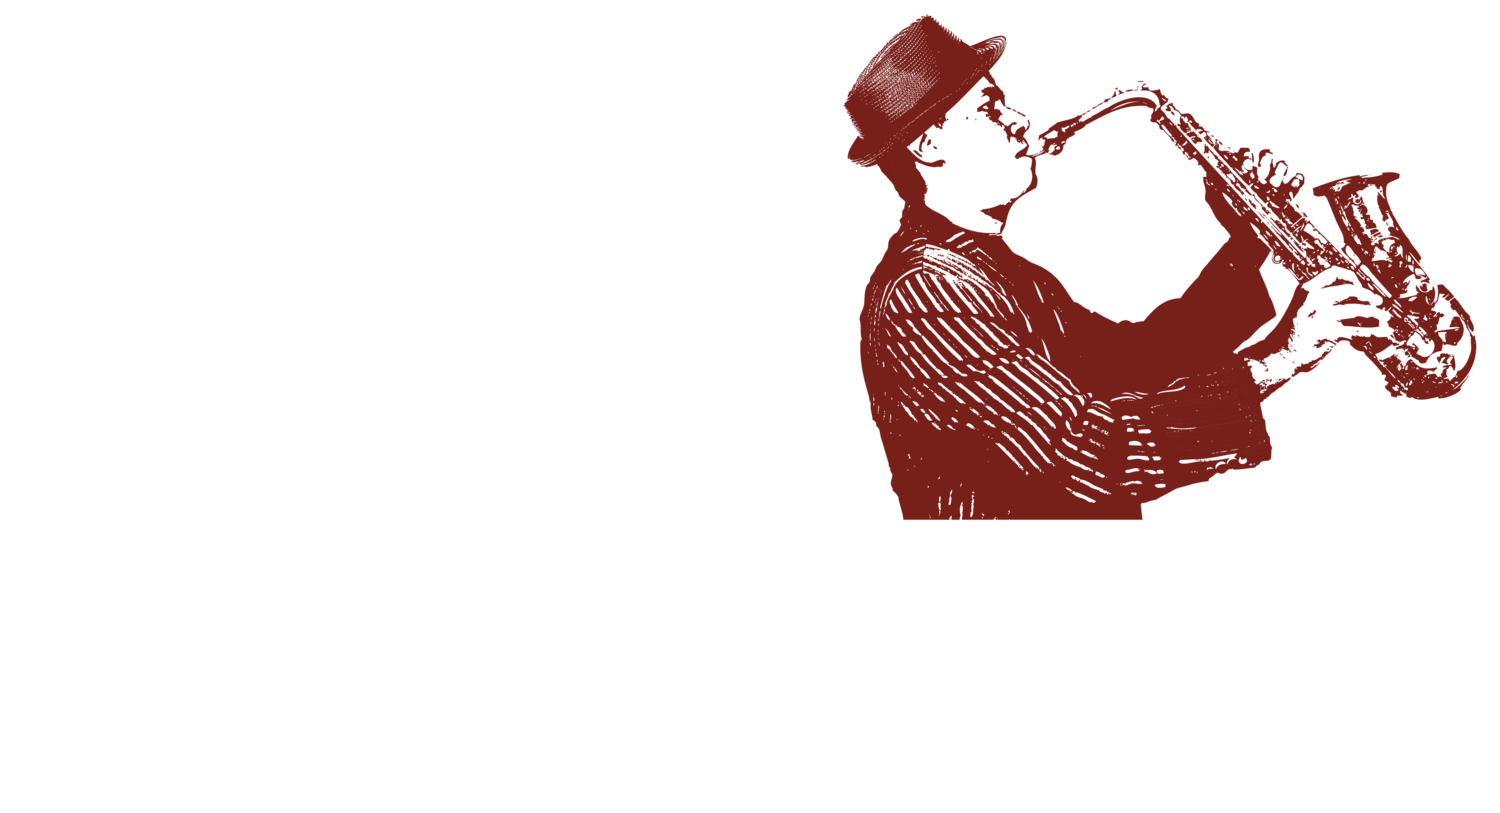 Ed Jackson